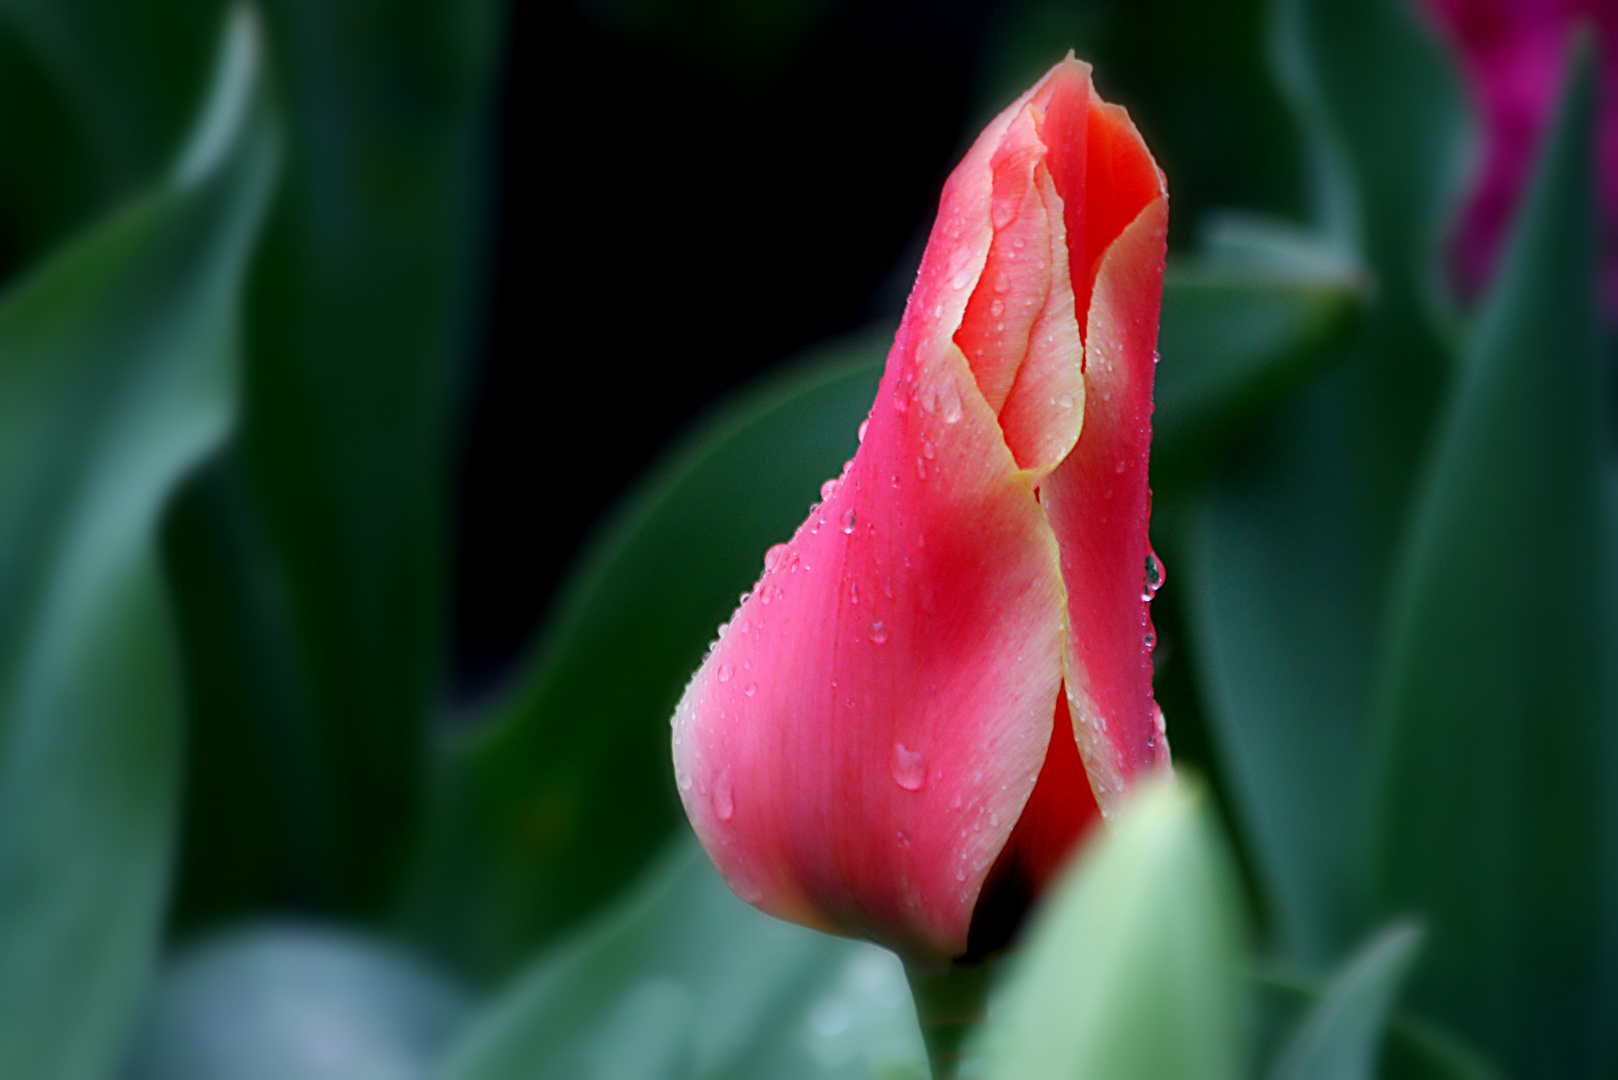 crying tulip...